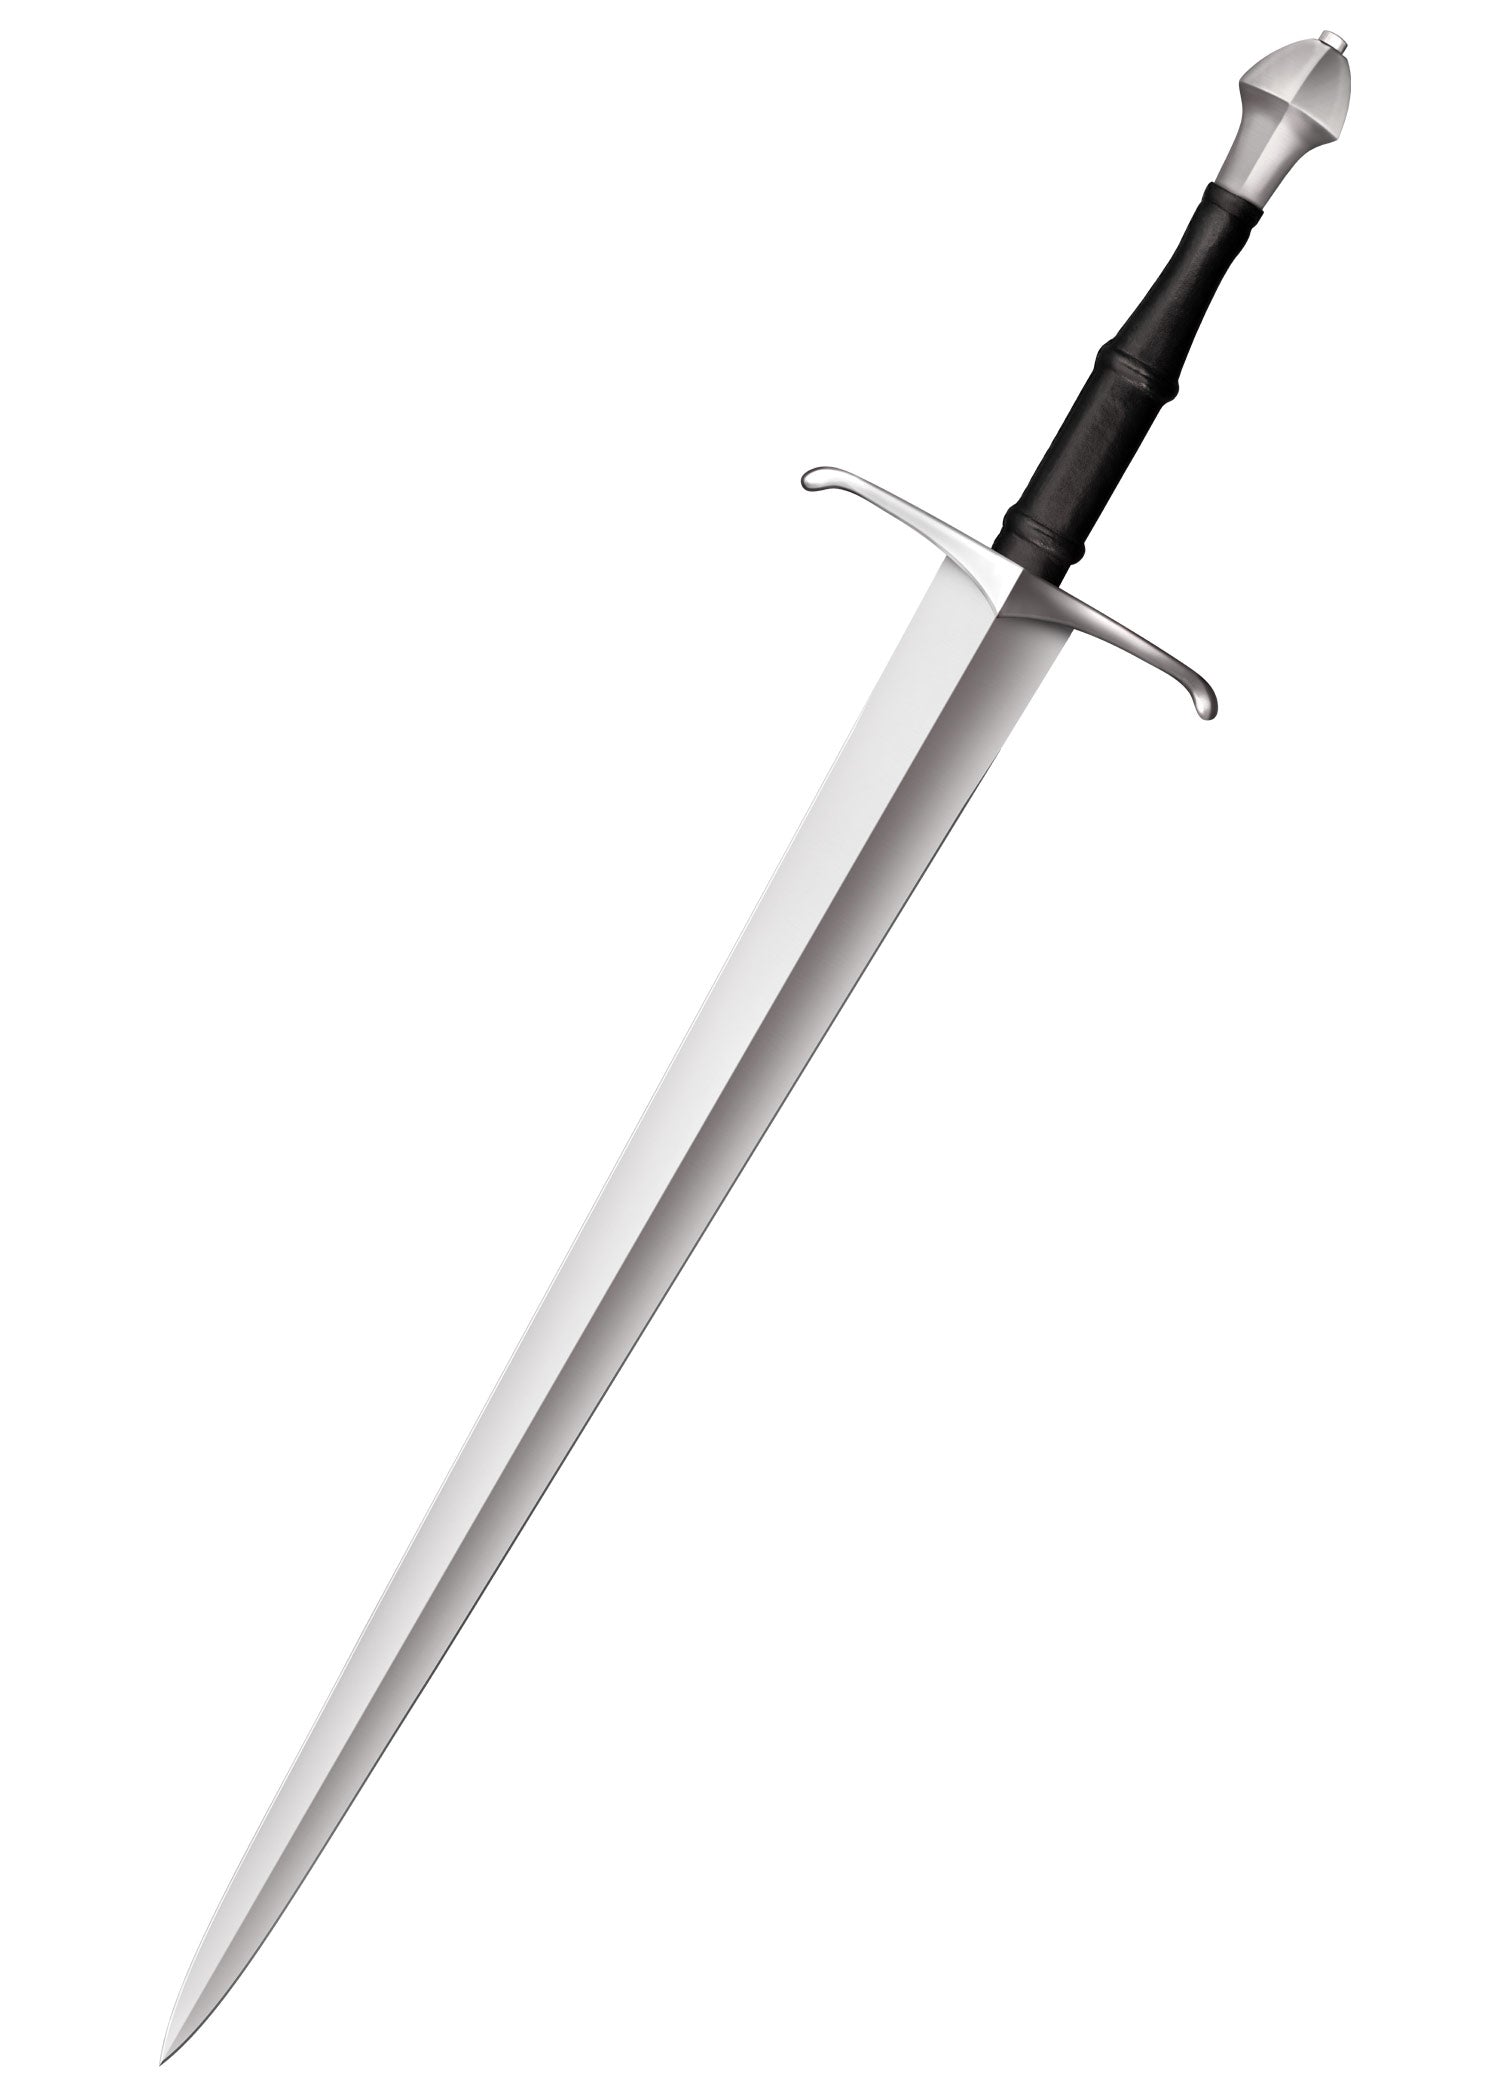 Épée médiévale pour les épreuves de coupe - Cold Steel-T.A DEFENSE